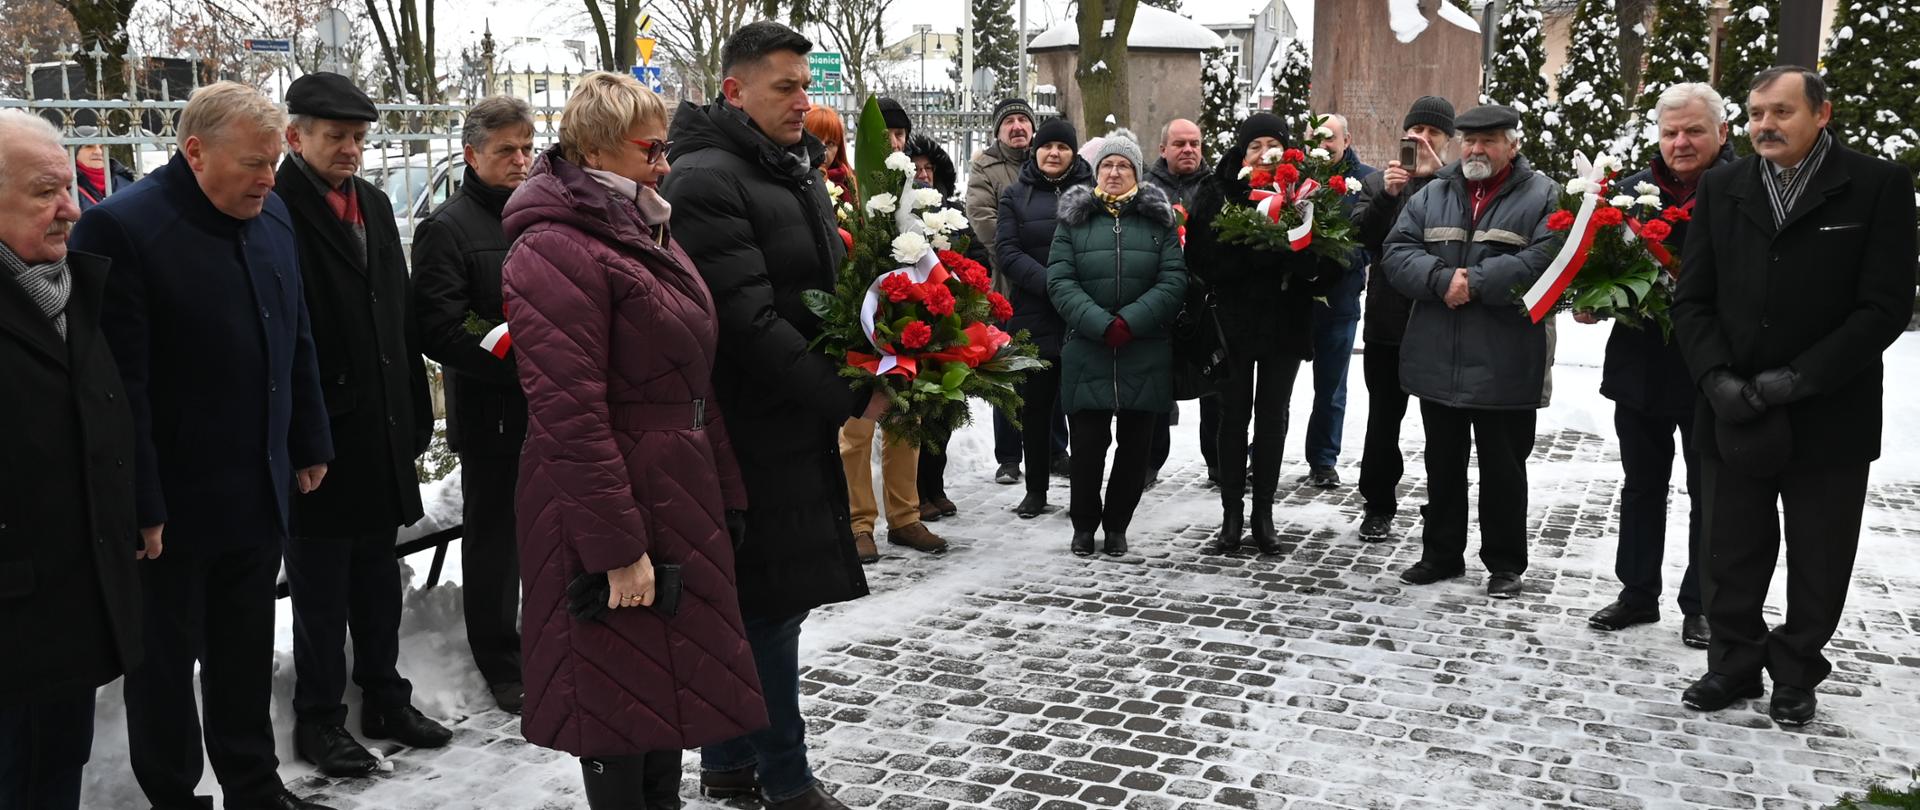 Burmistrz Konstantynowa Łódzkiego wraz z przewodniczącą Rady Miasta Jadwigą Czekajewską stoją obok siebie trzymając biało-czerwone kwiaty. Za nimi stoją ludzie, którzy przyglądają się im, trzymając również wiązanki.